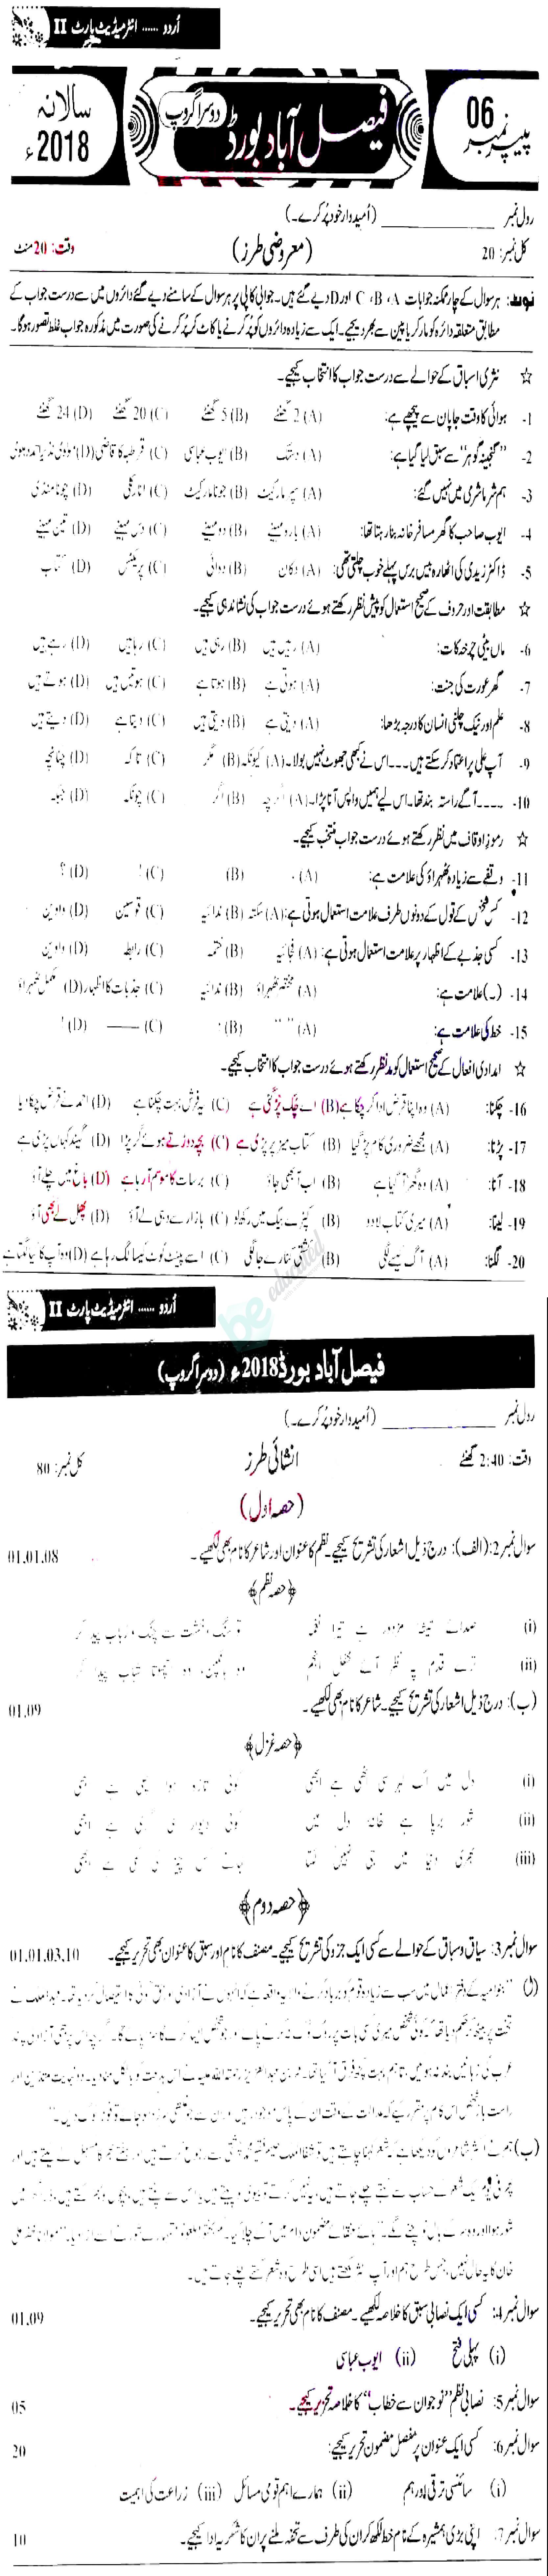 Urdu 12th class Past Paper Group 2 BISE Faisalabad 2018